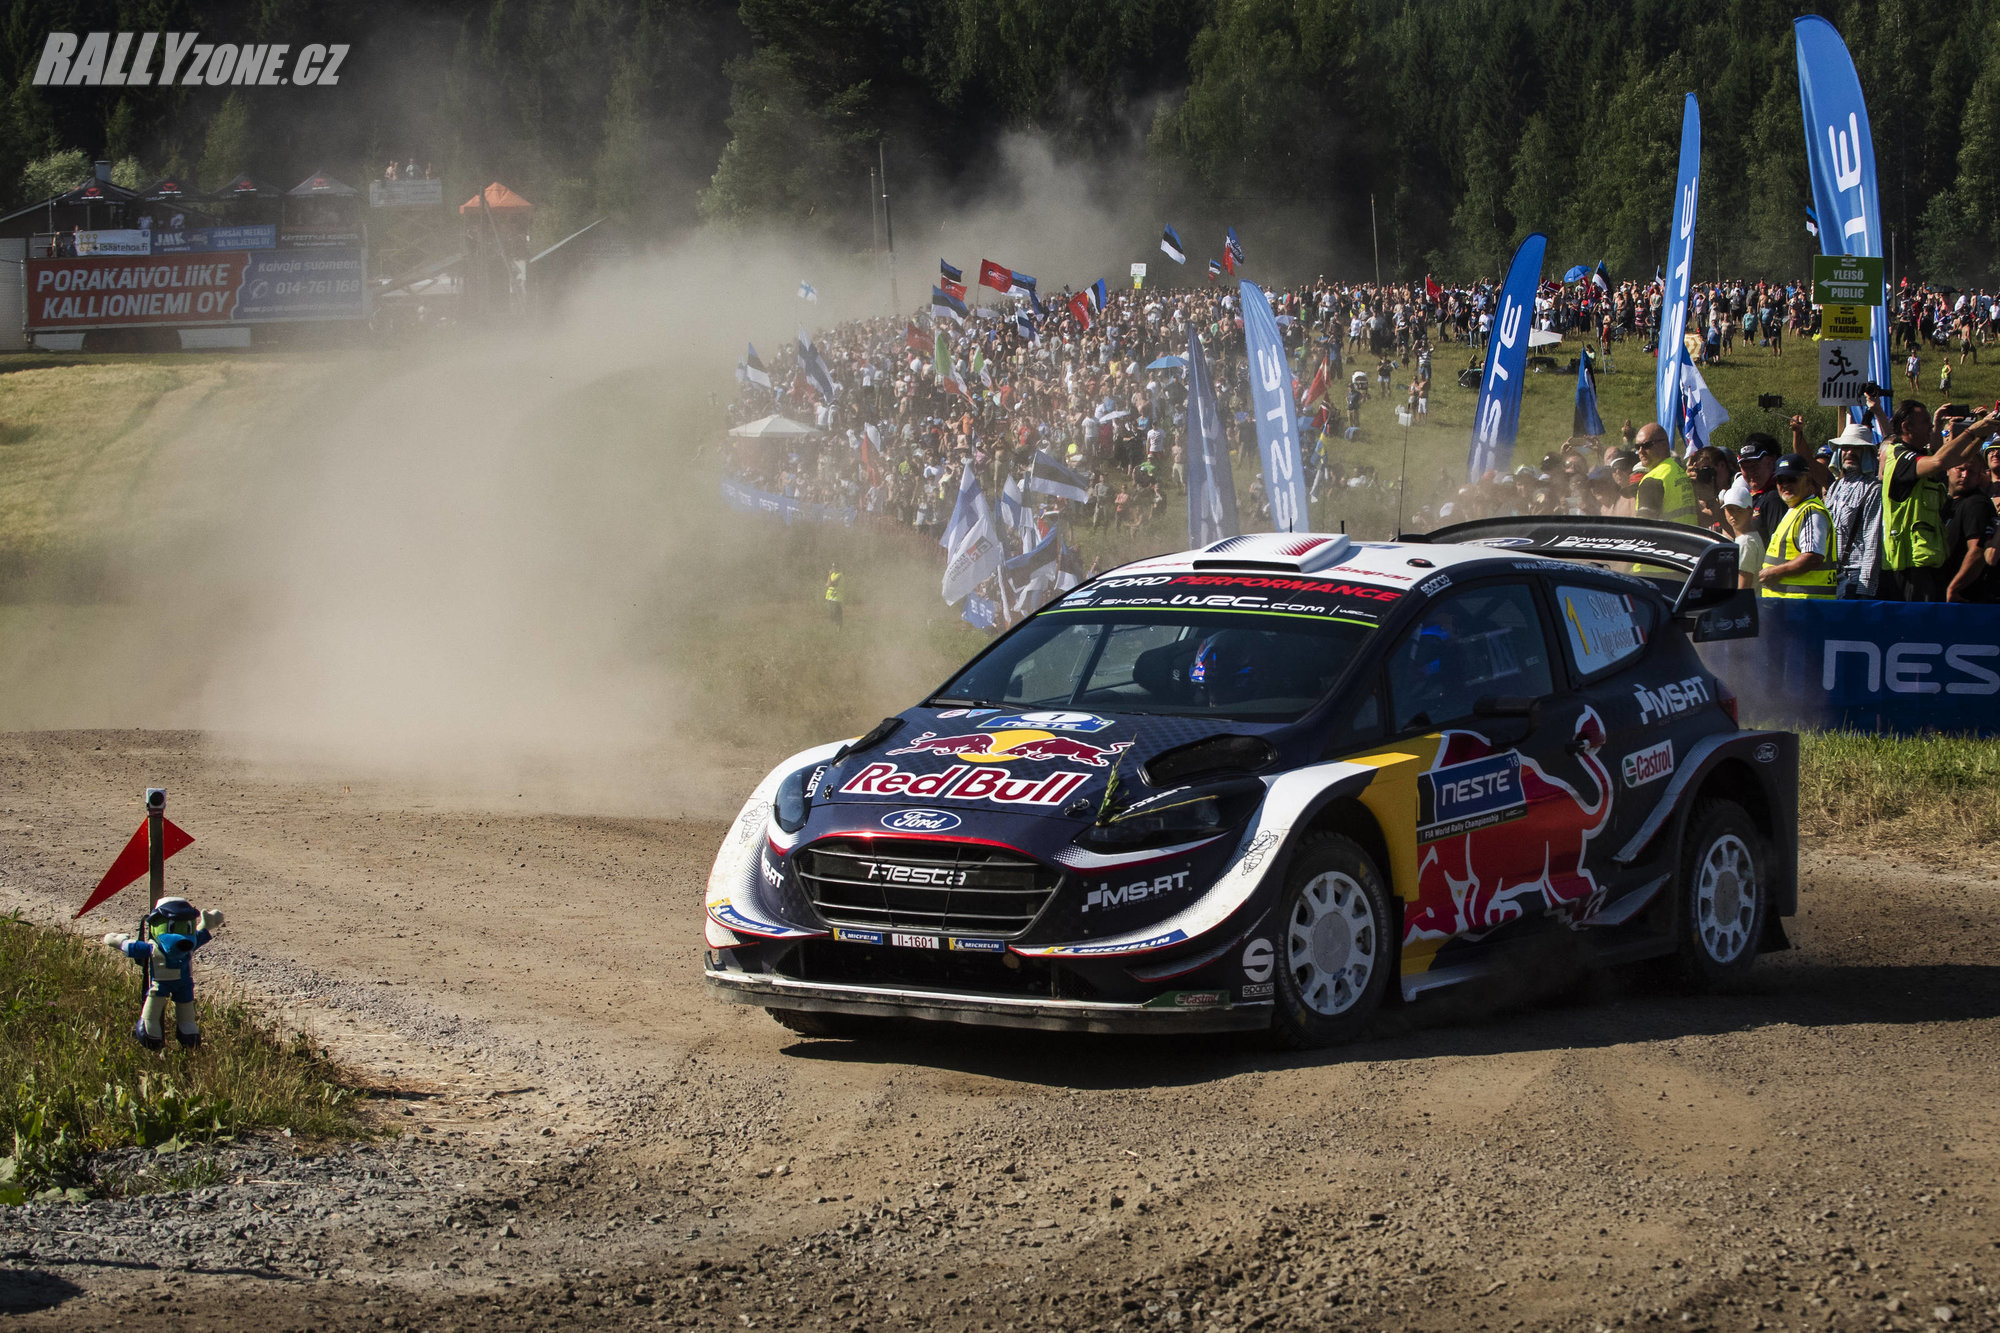 Jede Ogier svoji poslední sezonu ve WRC?